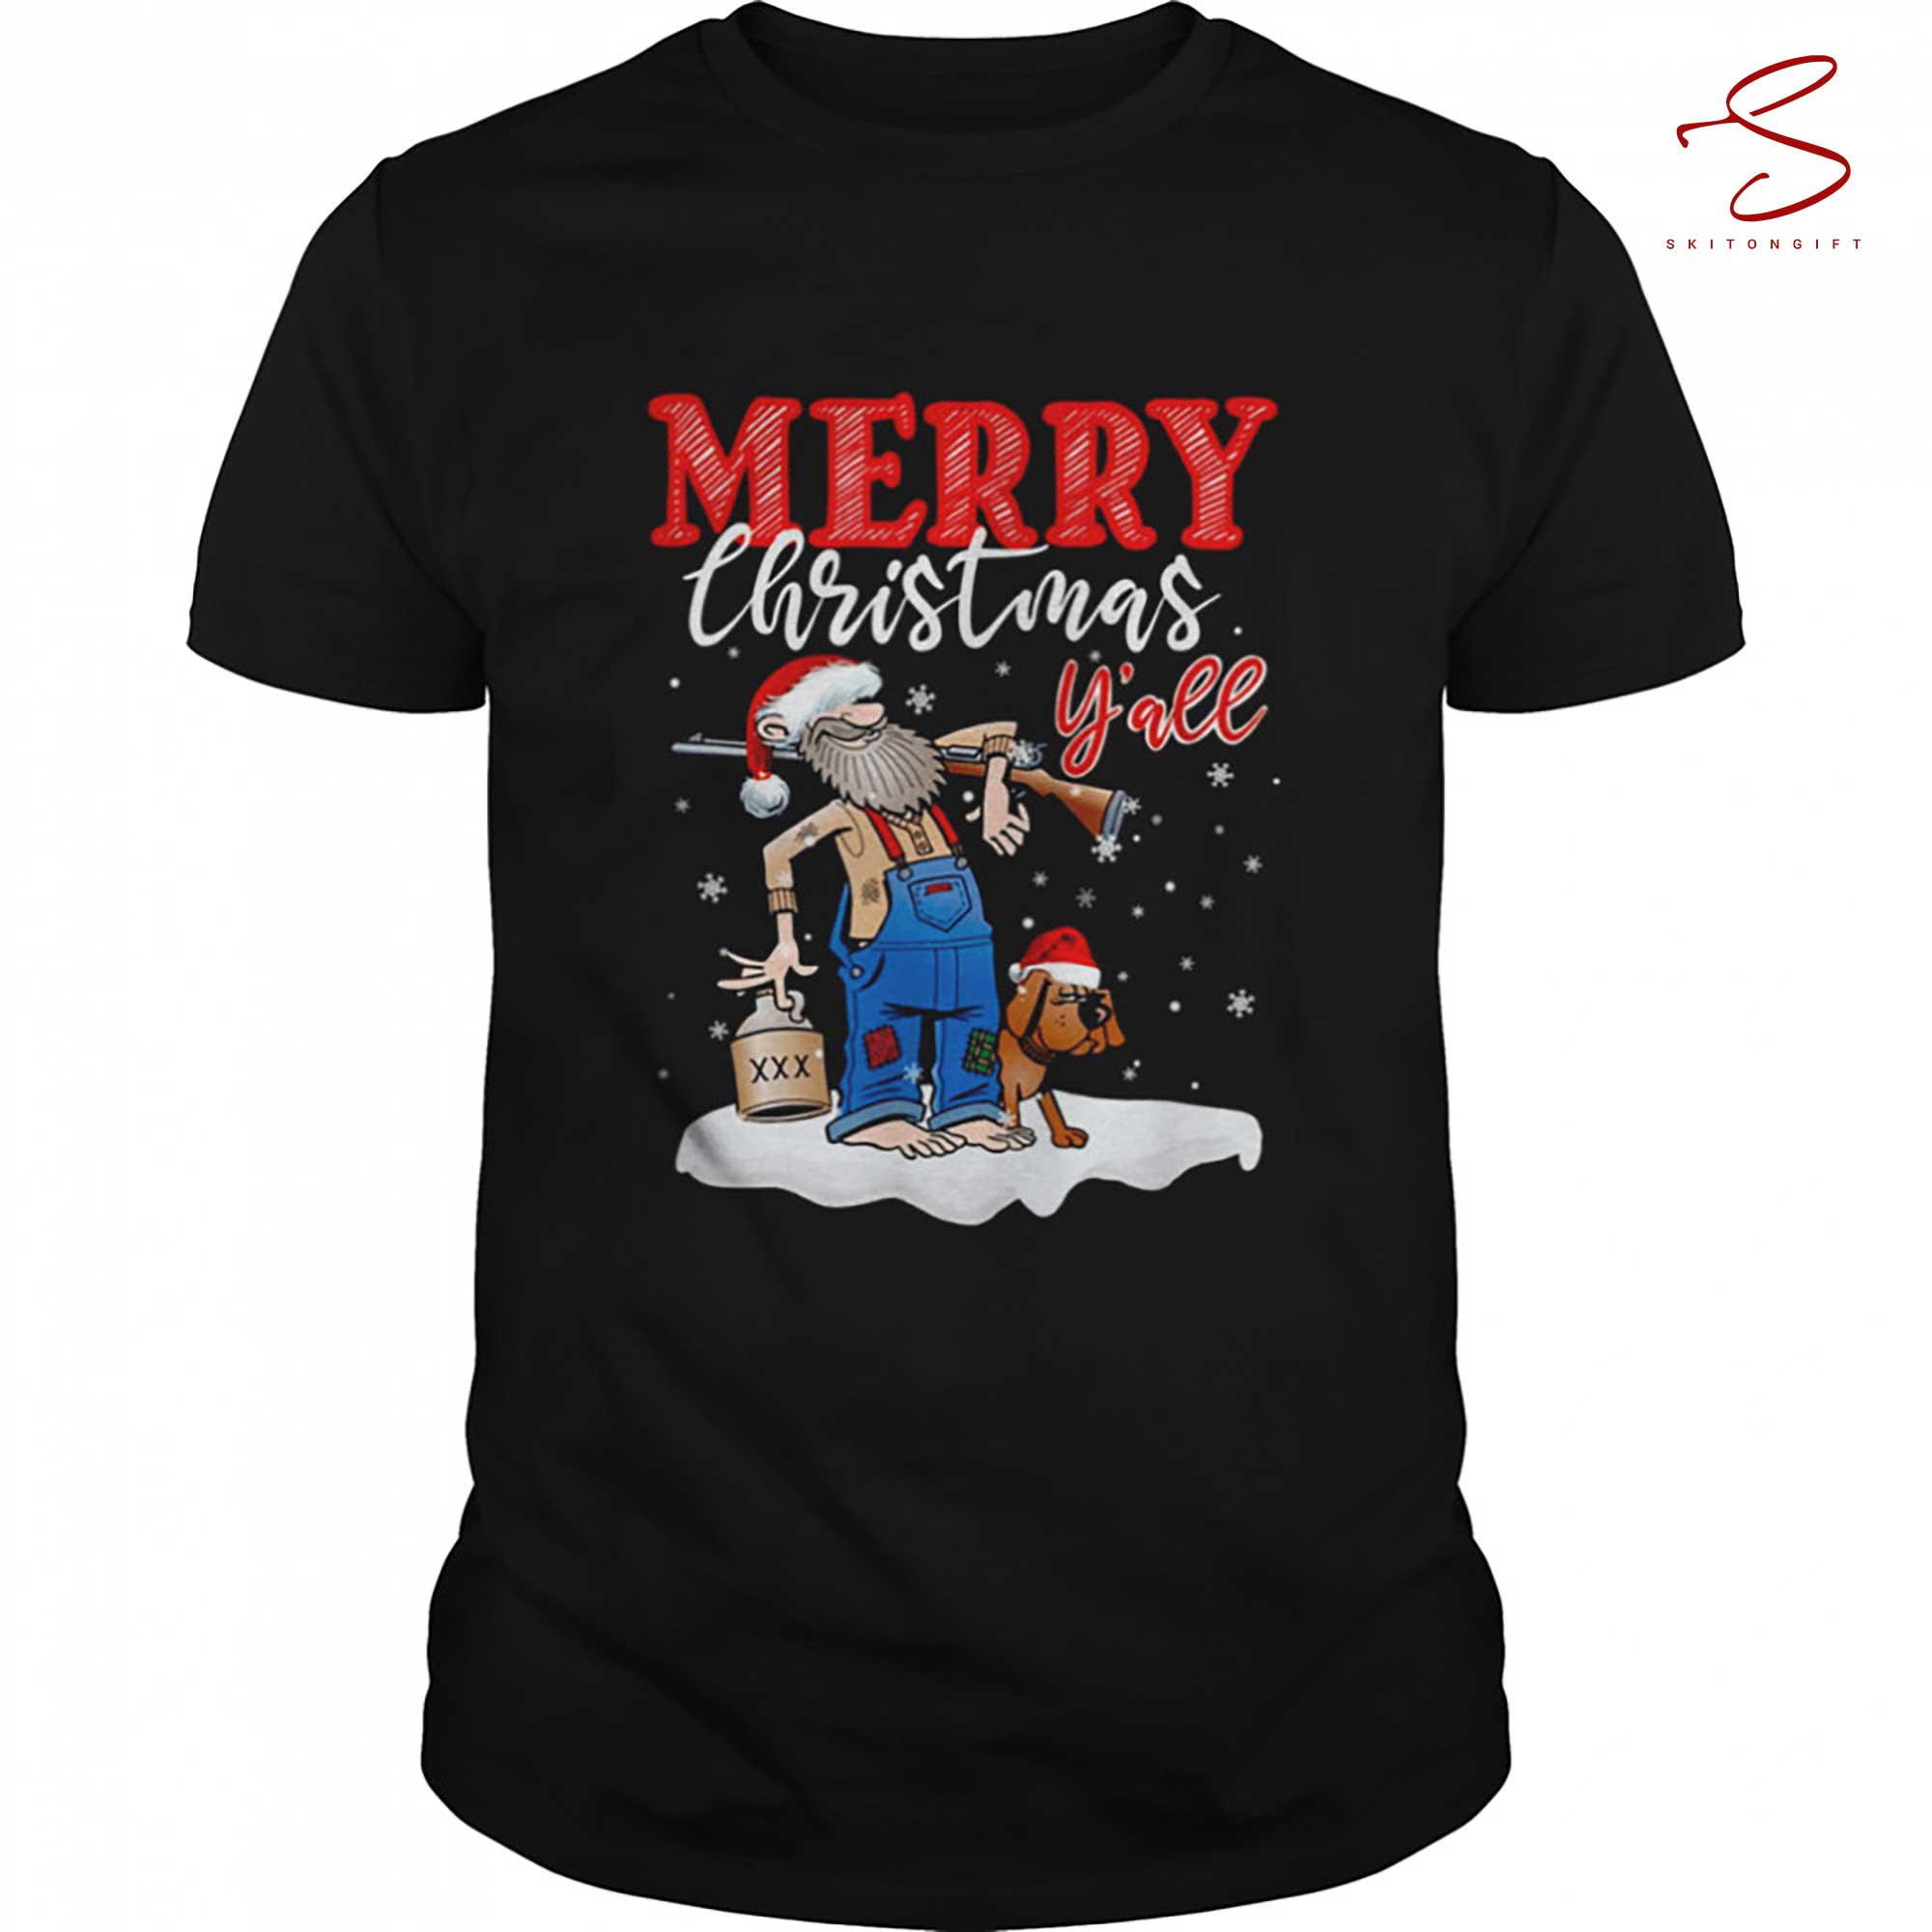 Skitongift Merry Christmas Y All Santa And His Dog Shirt